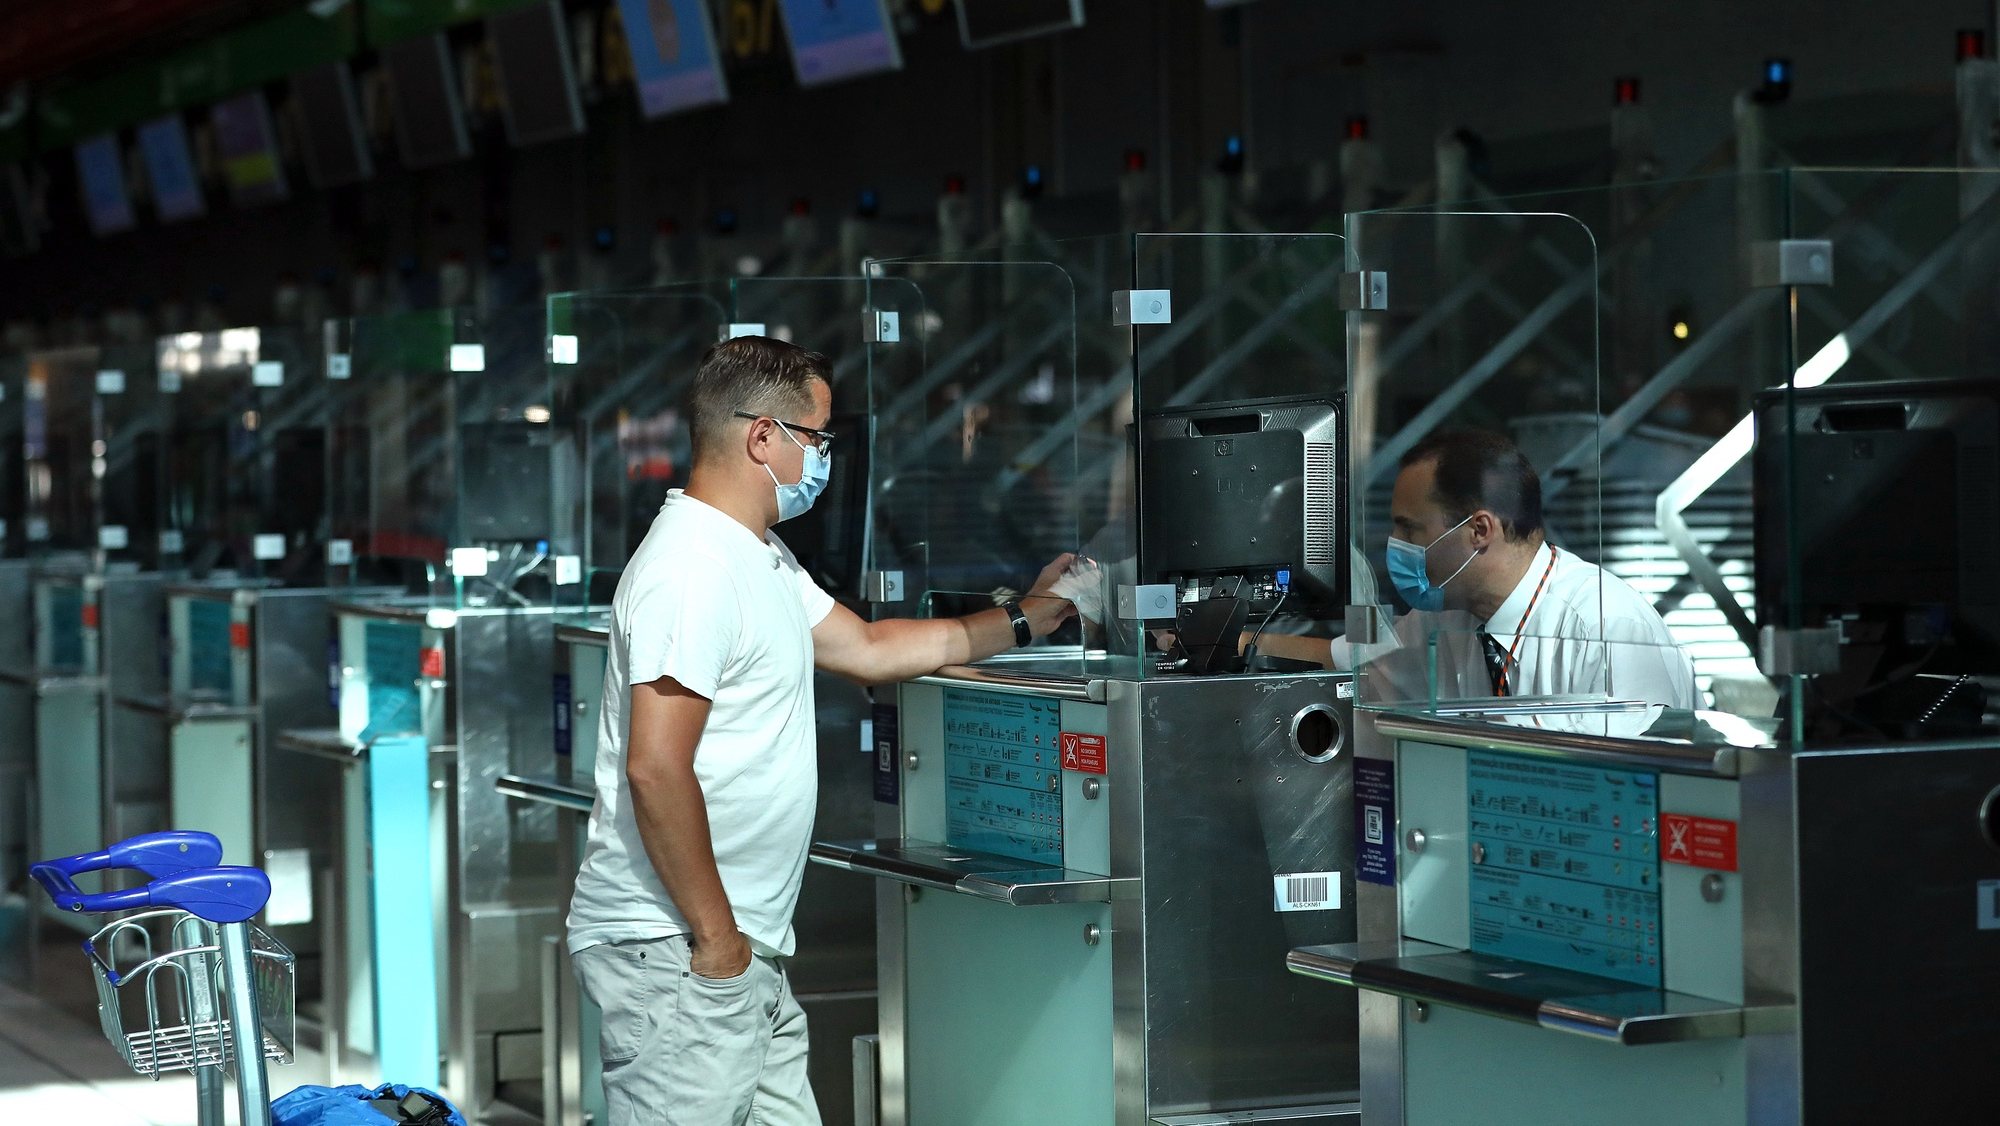 Um passageiro efetua o check-in no aeroporto Humberto Delgado